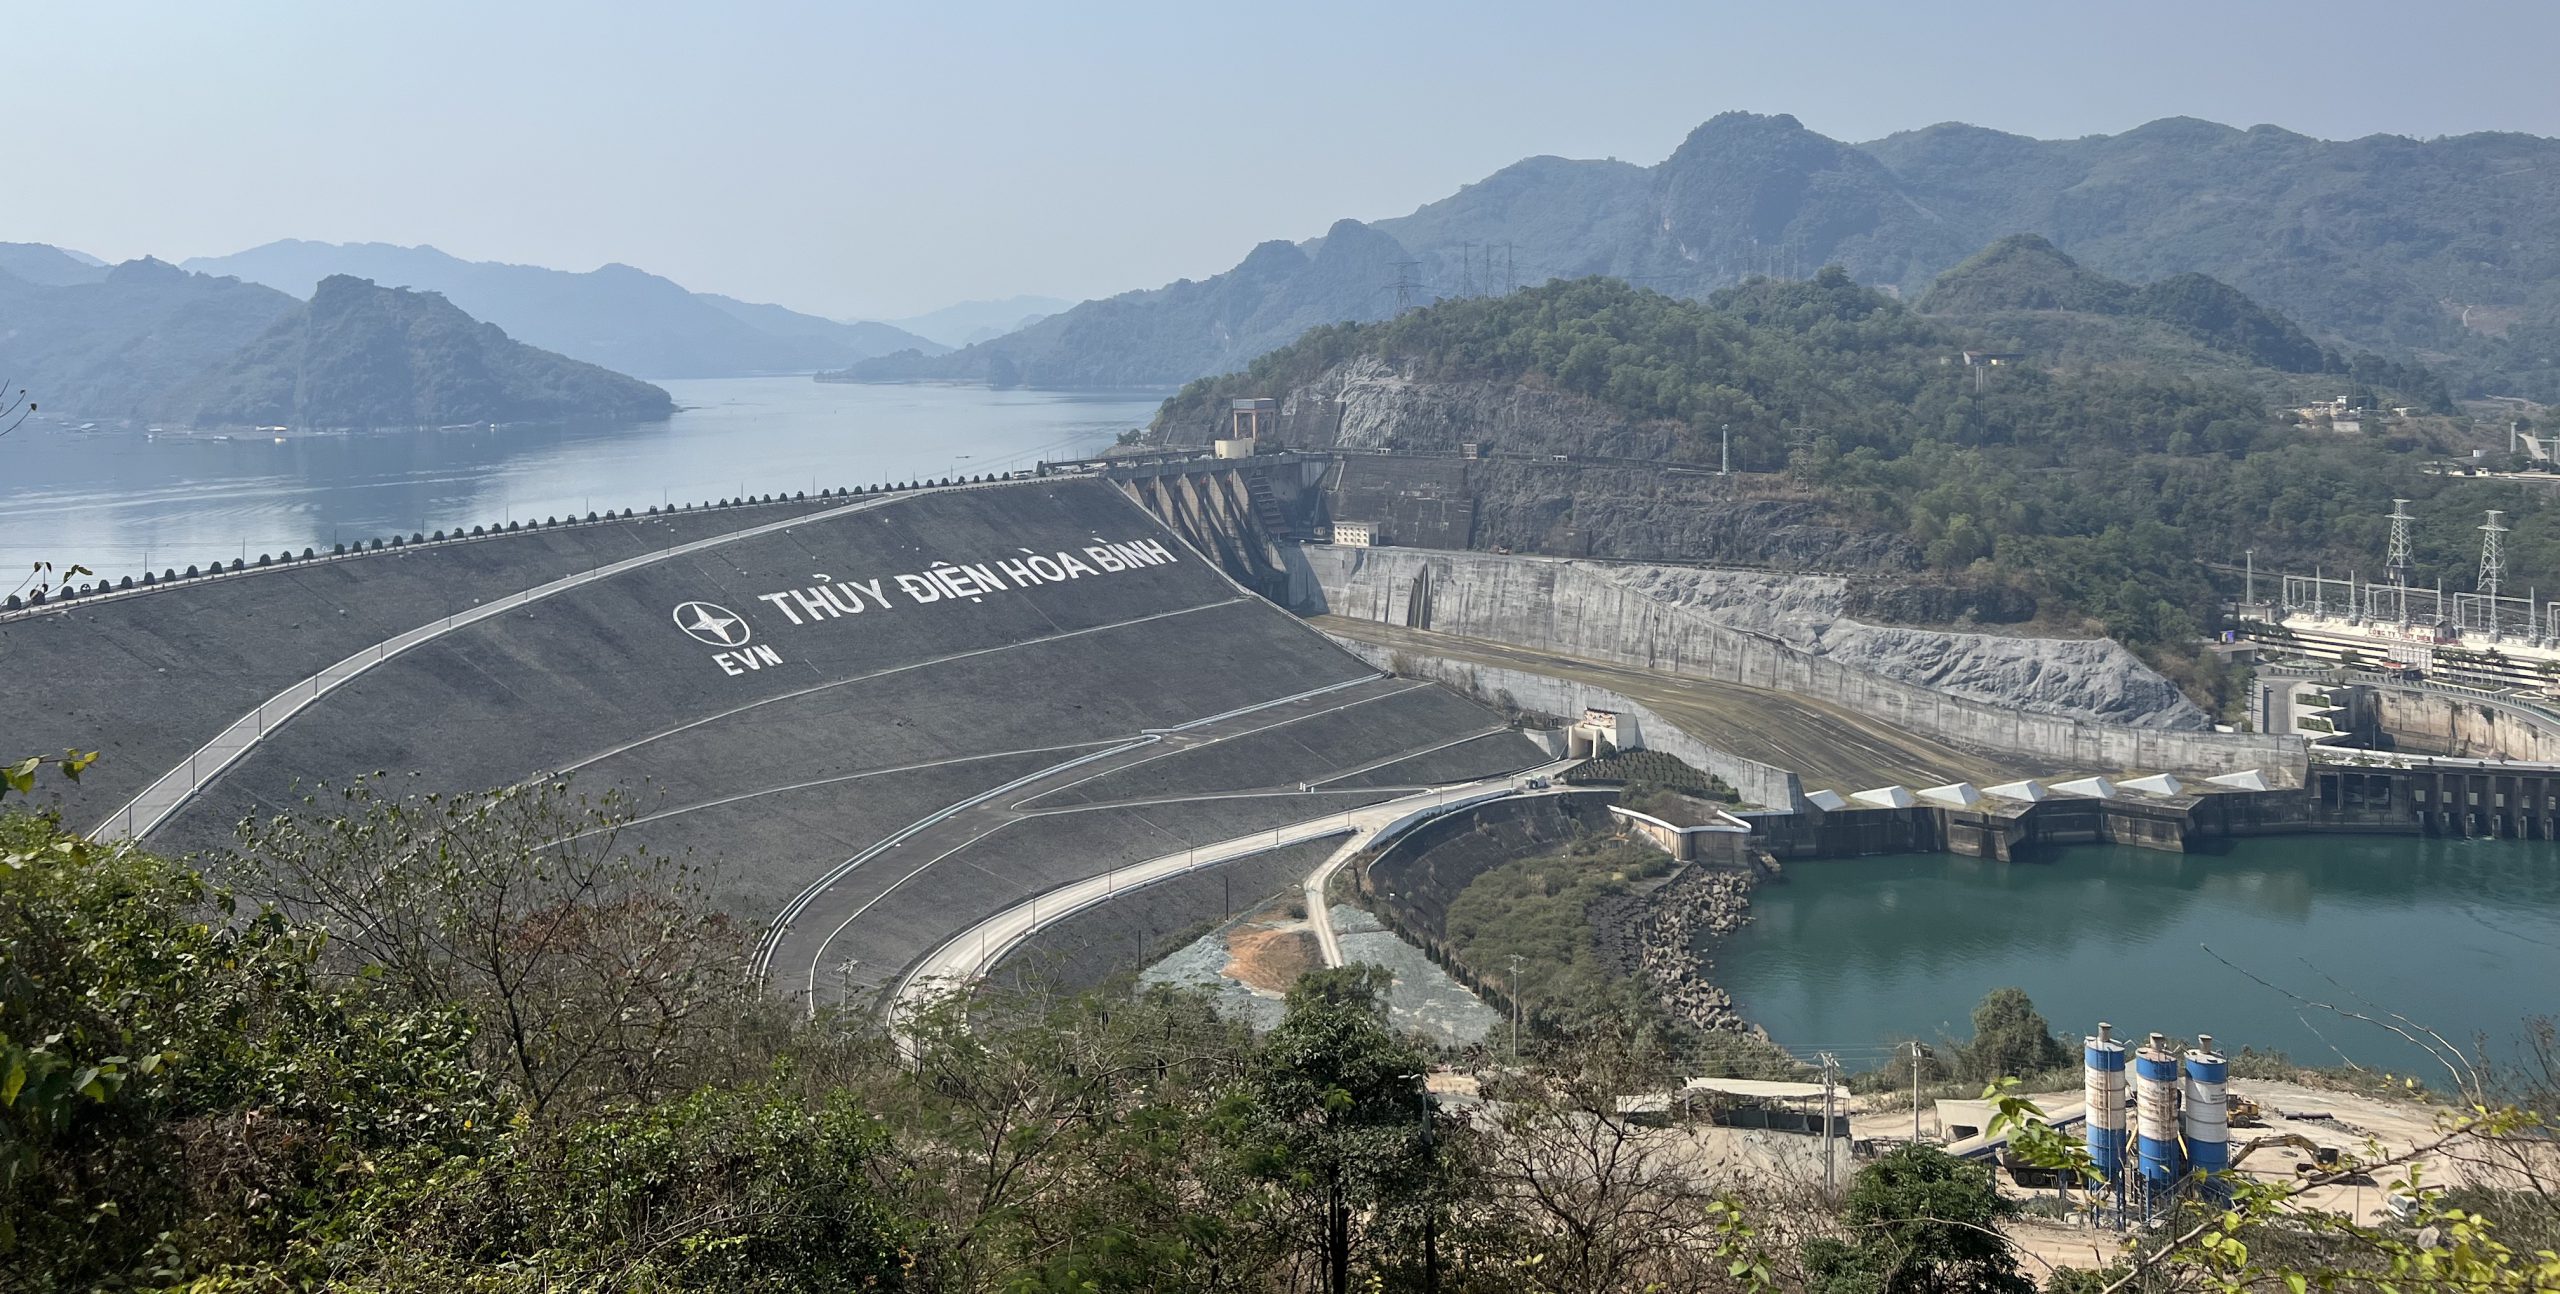 Hồ thủy điện Hòa Bình - Nhà máy thủy điện lớn nhất Đông Nam Á